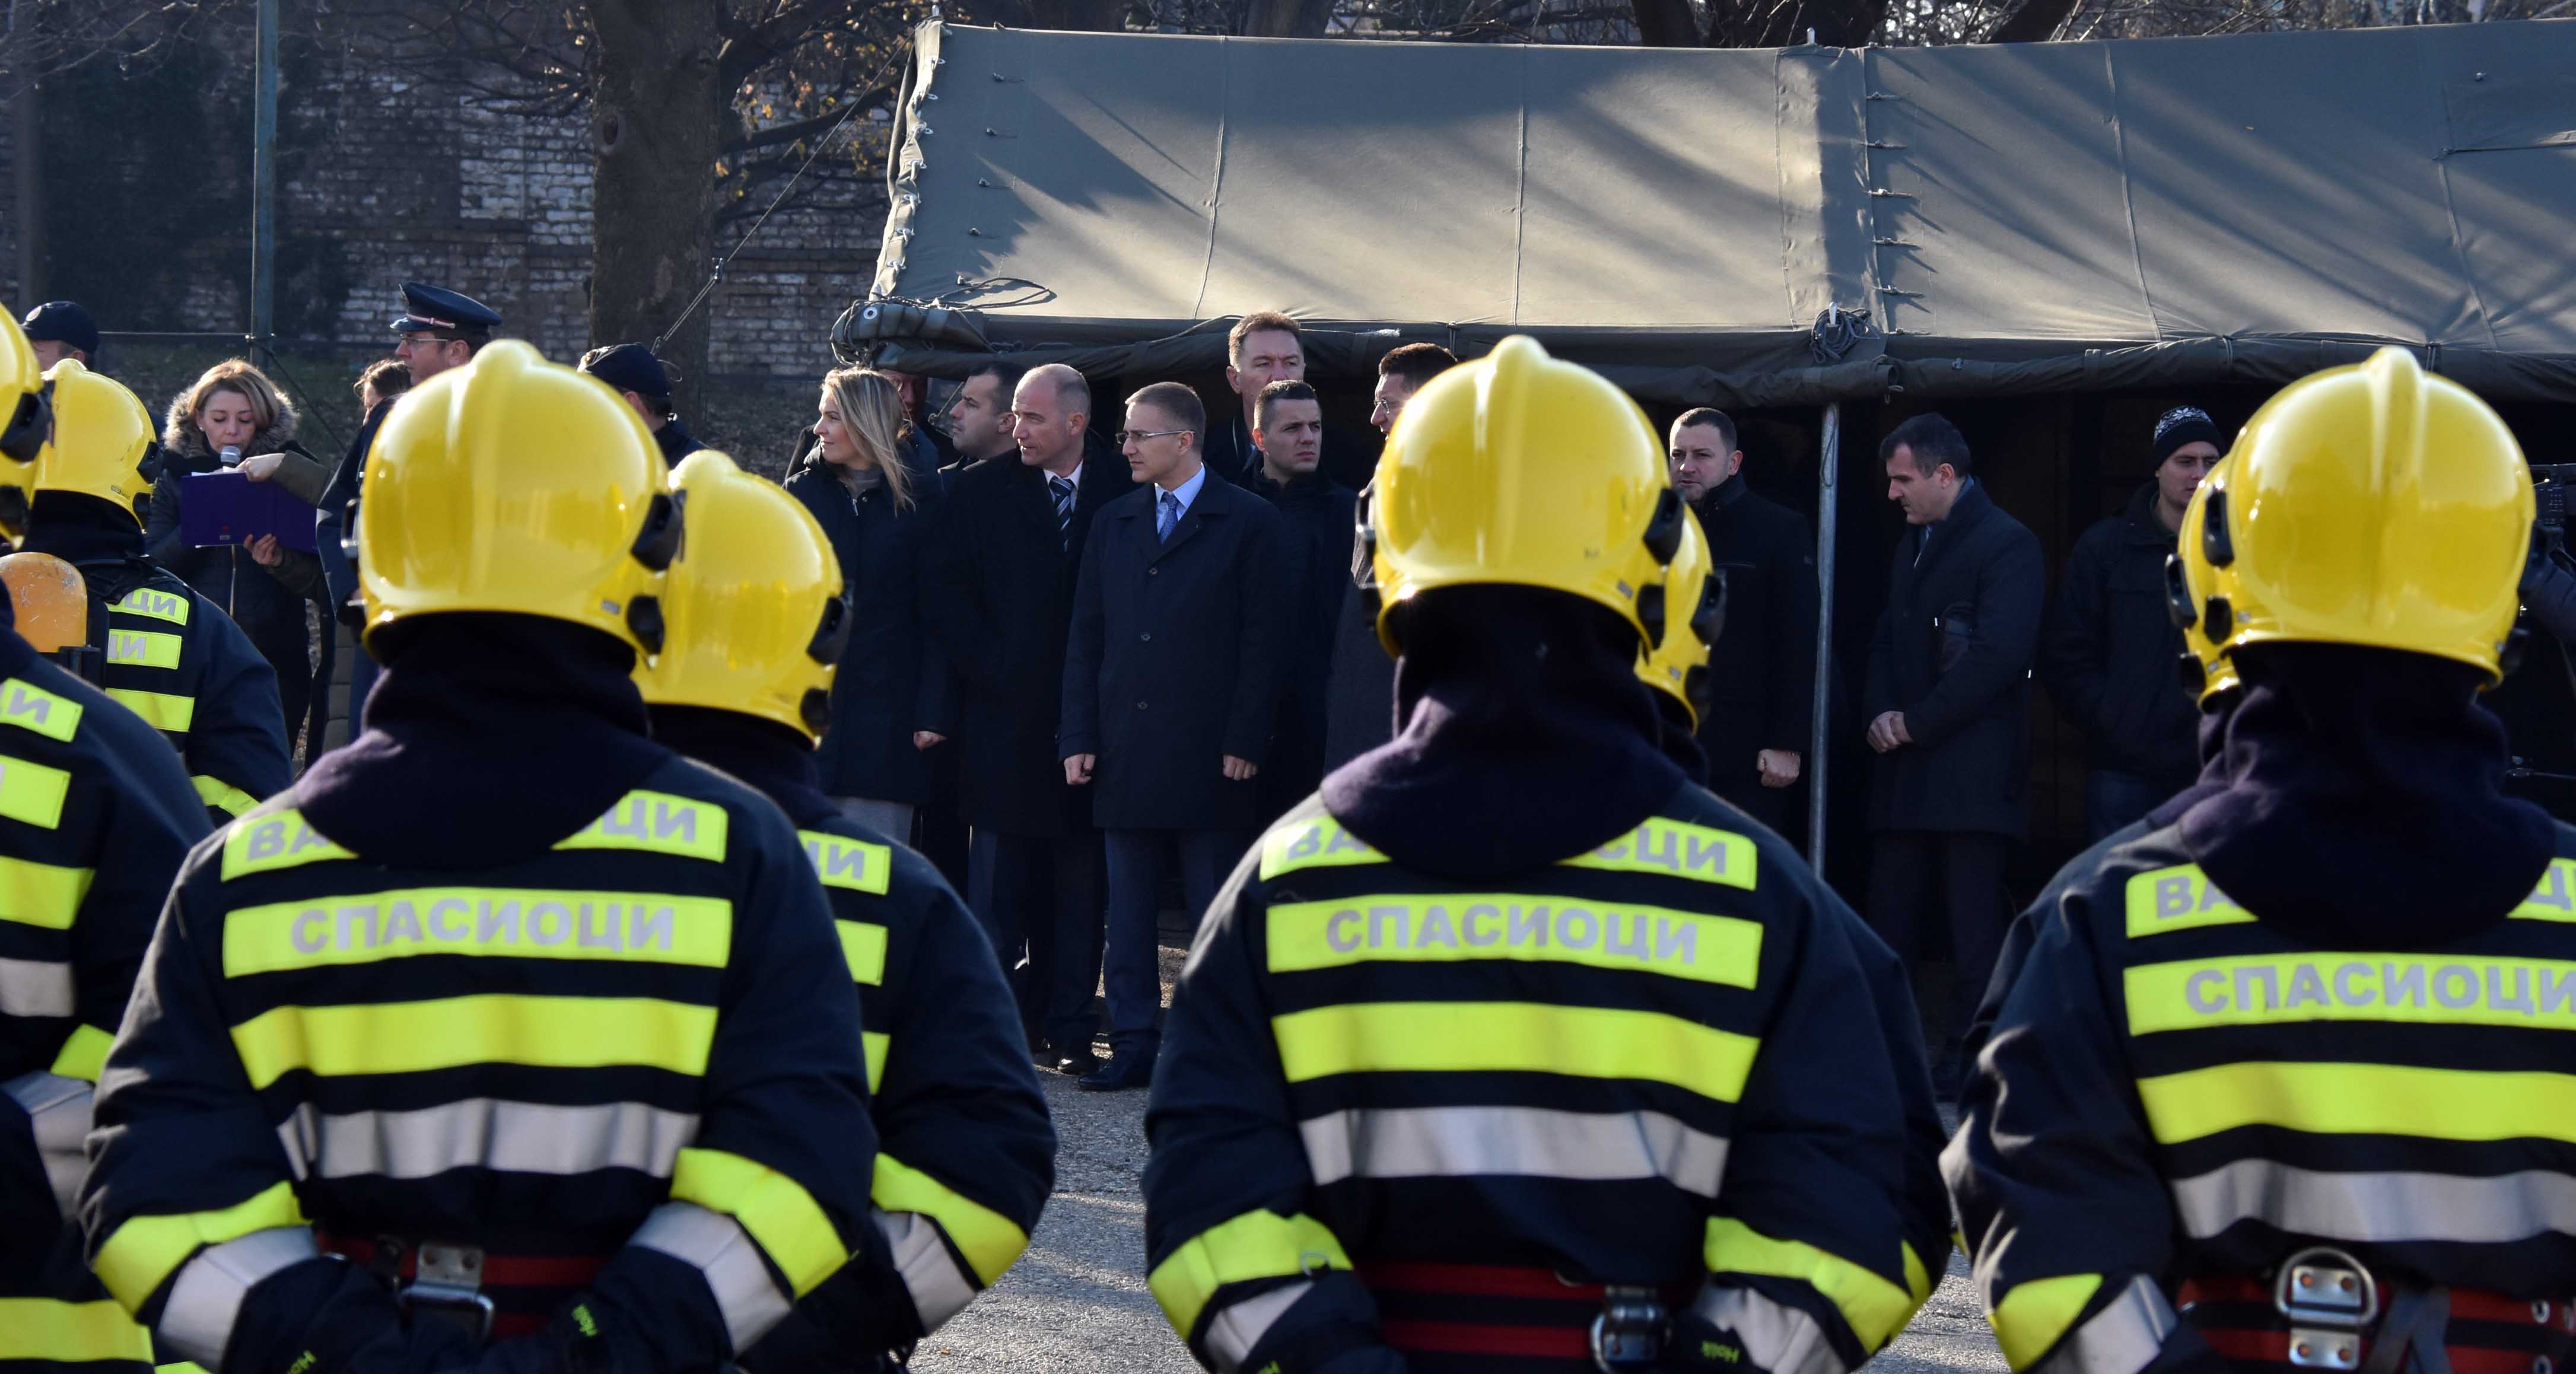 Стефановић:MУП ће наставити са јачањем ватрогасно–спасилачких јединица набавком нове опреме и запошљавањем нових ватрогасаца